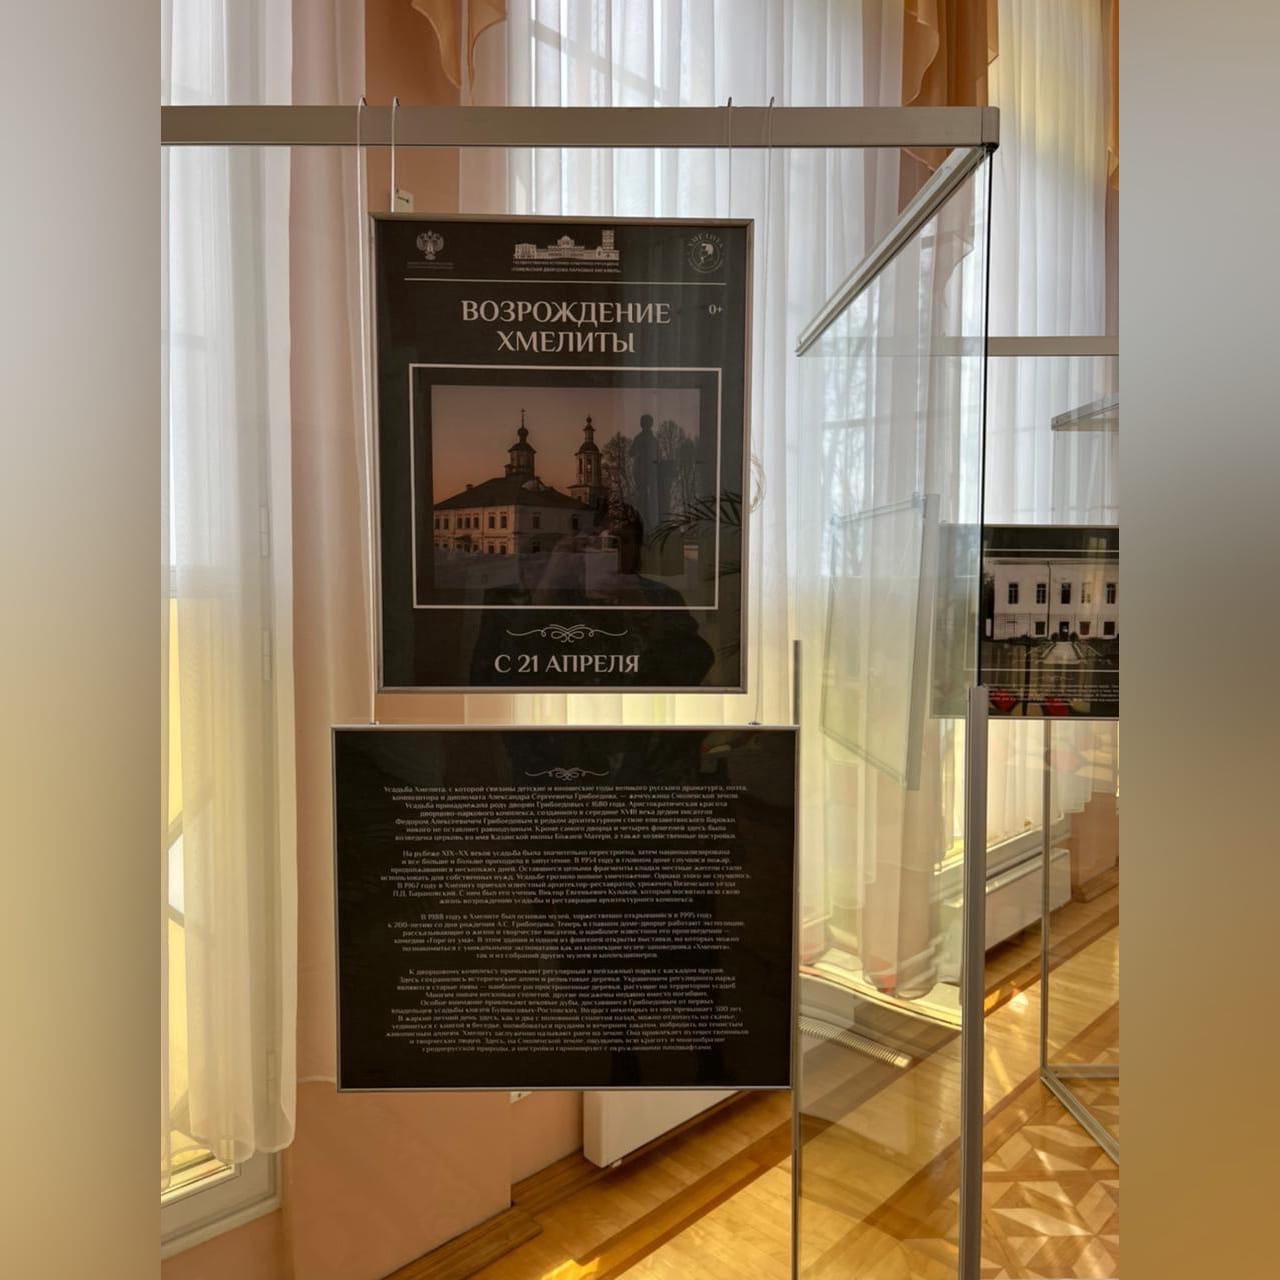 Выставка «Возрождение Хмелиты» открылась в белорусском Гомеле 